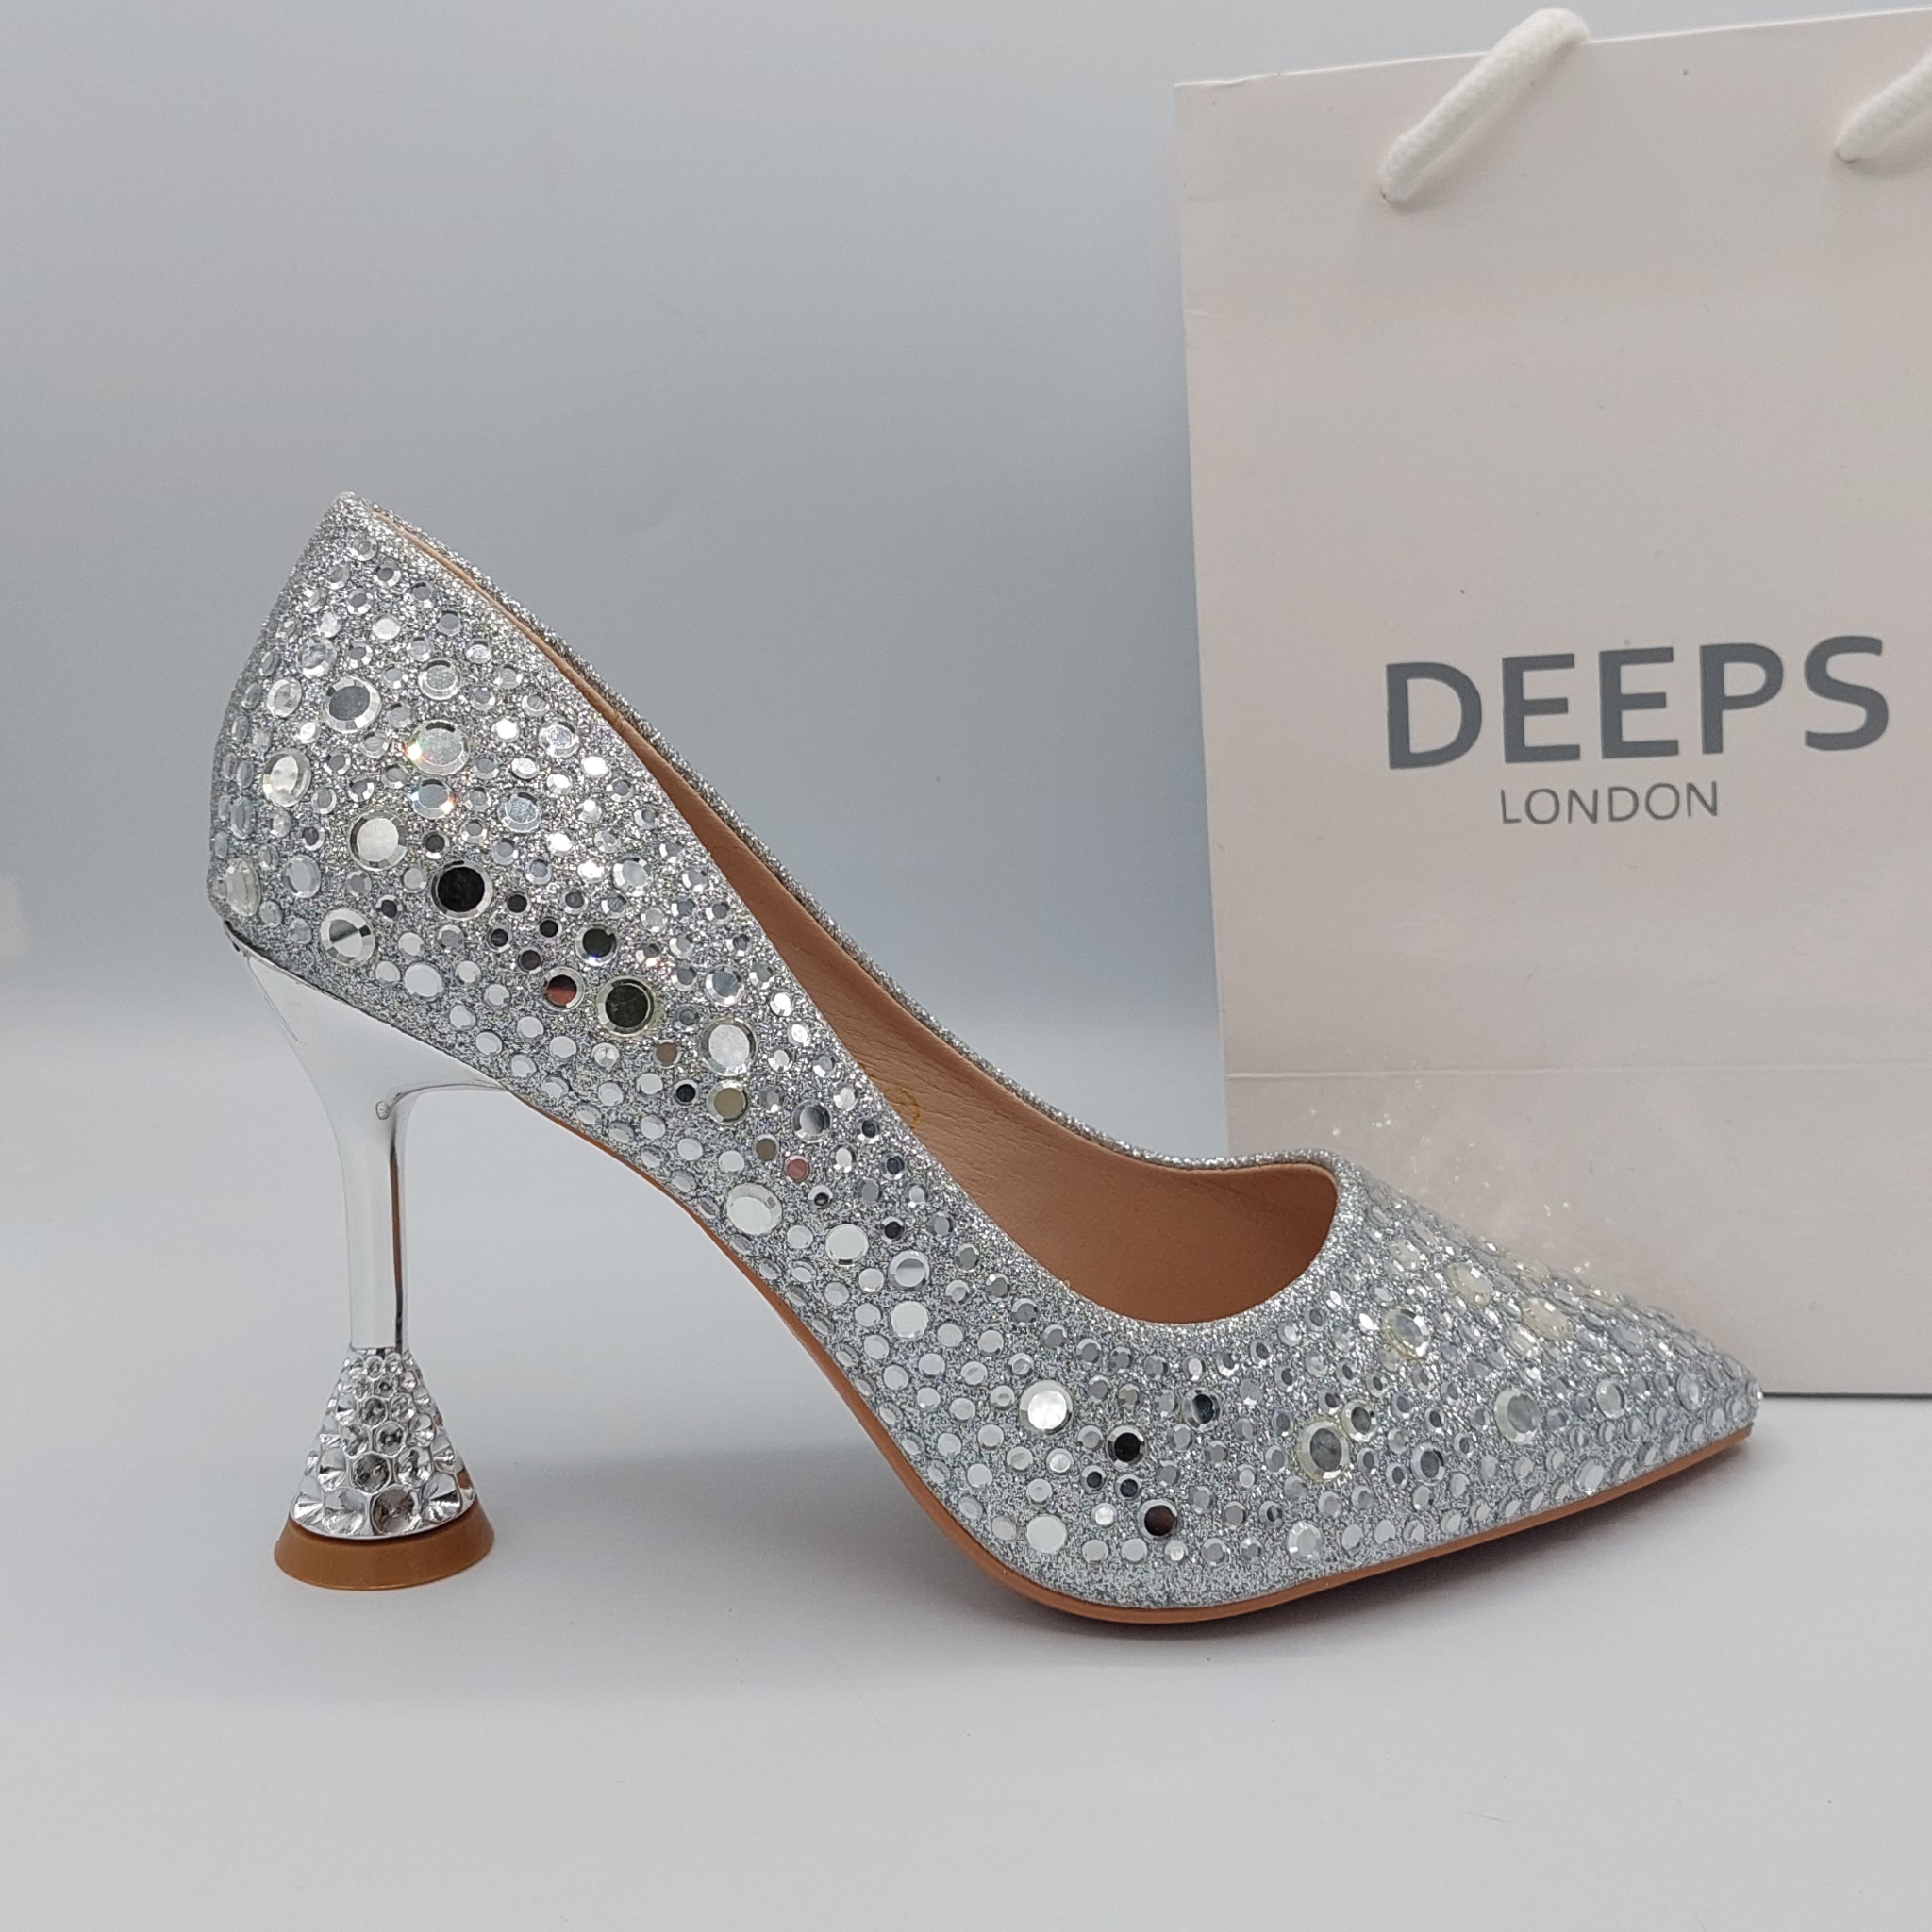 Gina London designer shoes ivory dress heels size 4 used